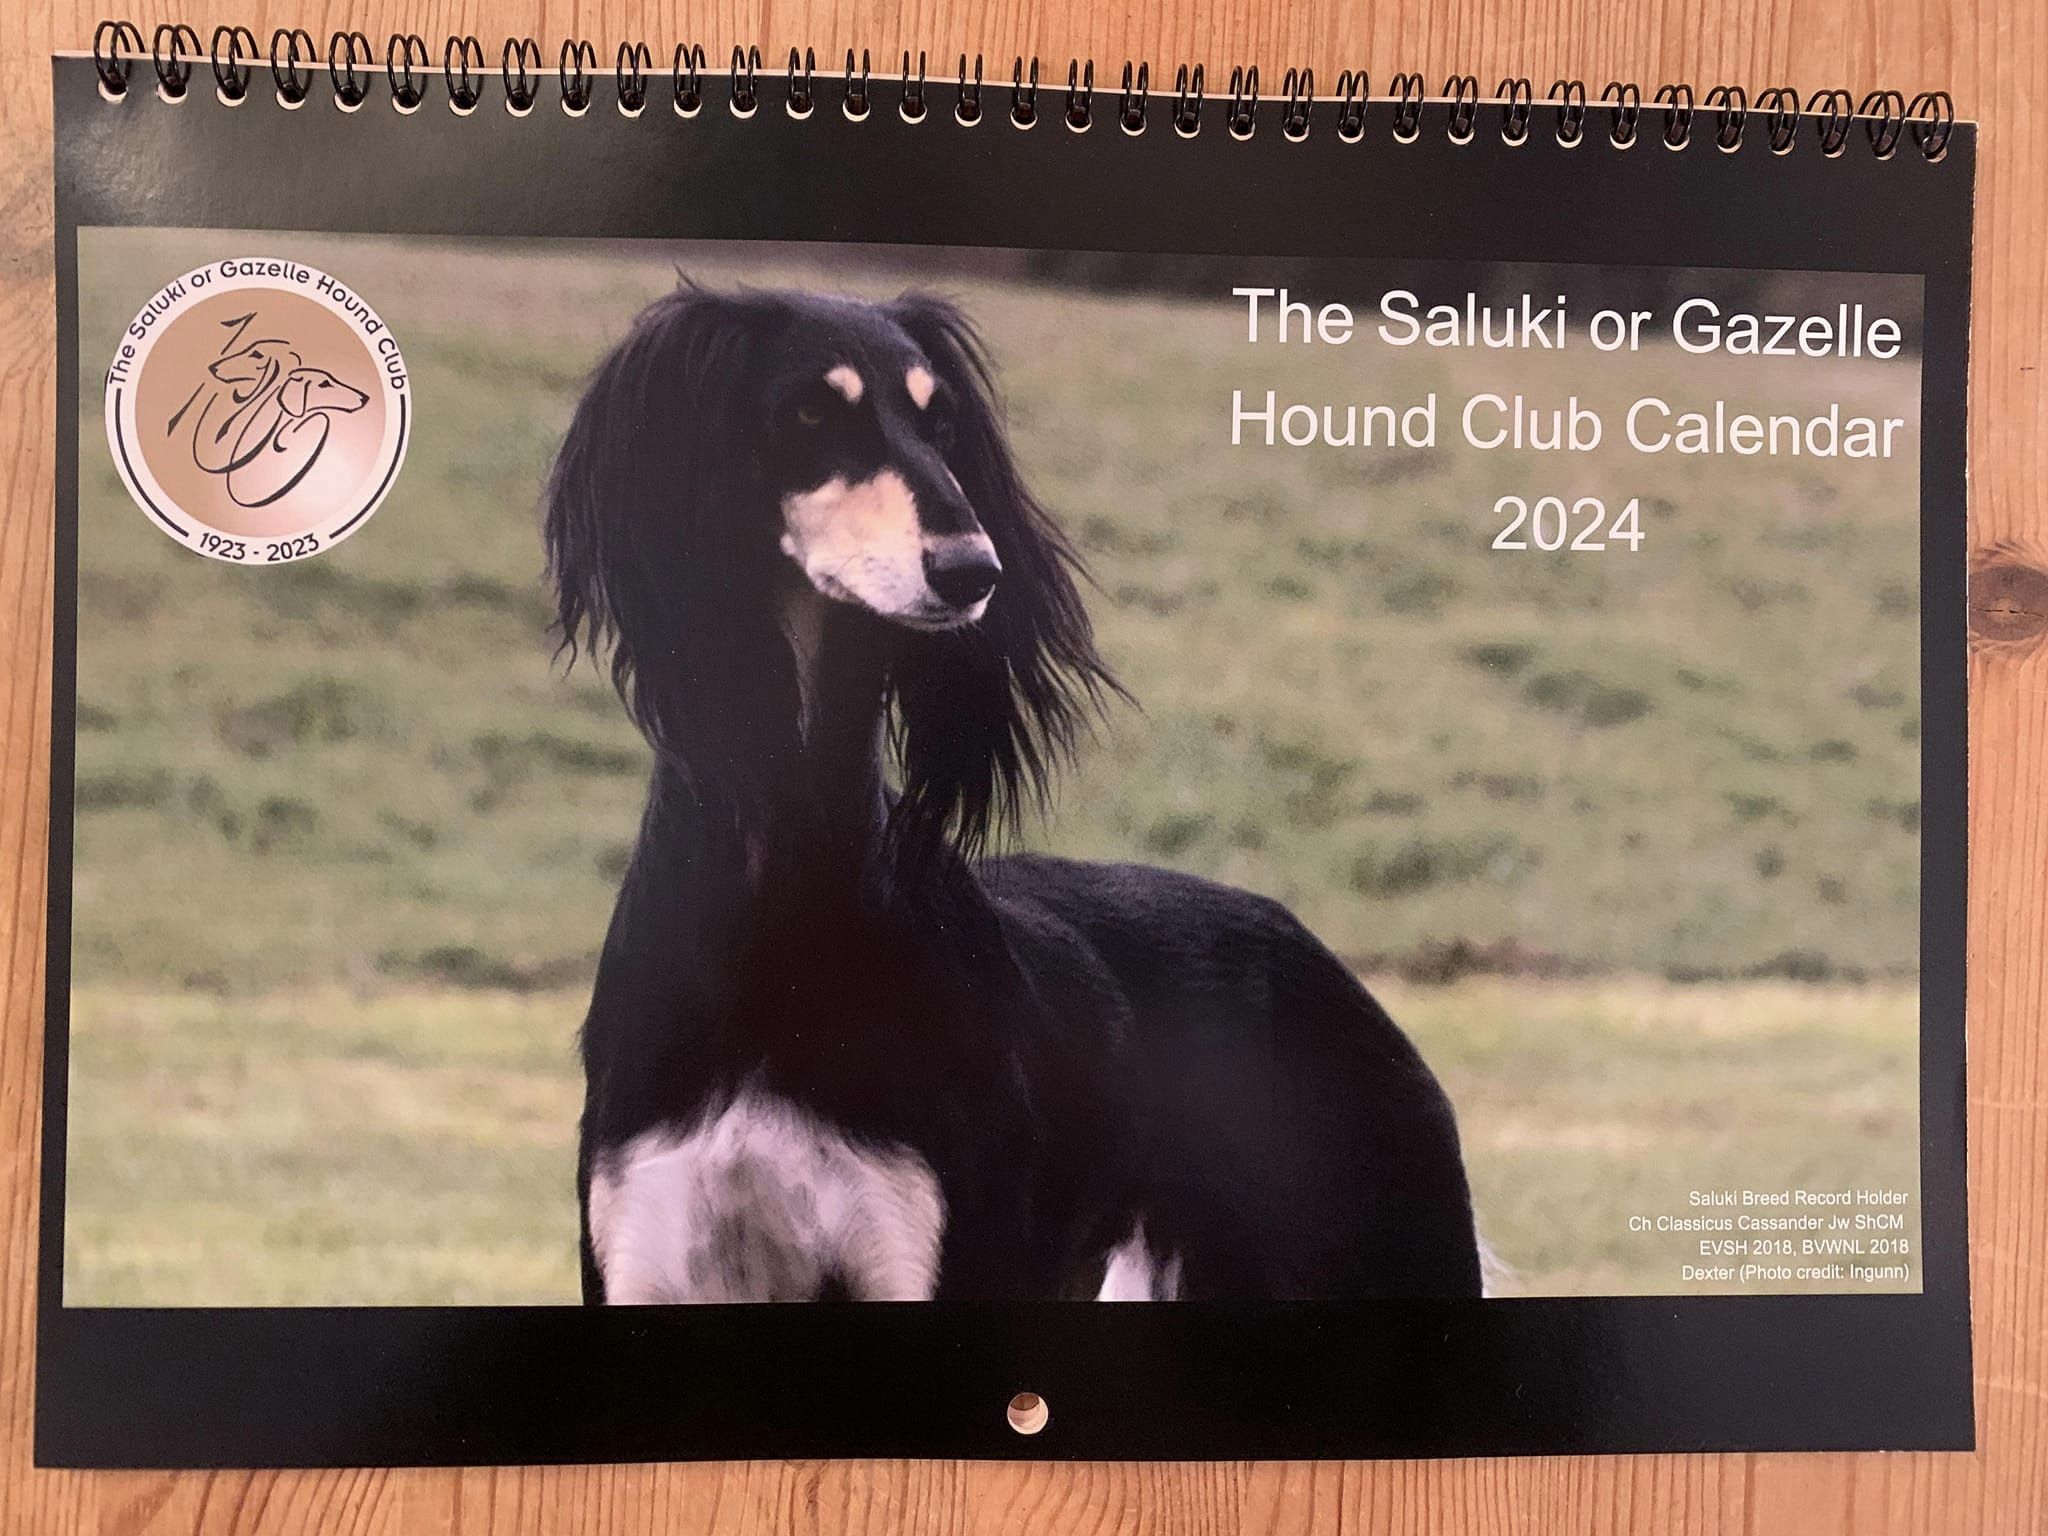 Saluki or Gazelle Hound Club Calendar 2024